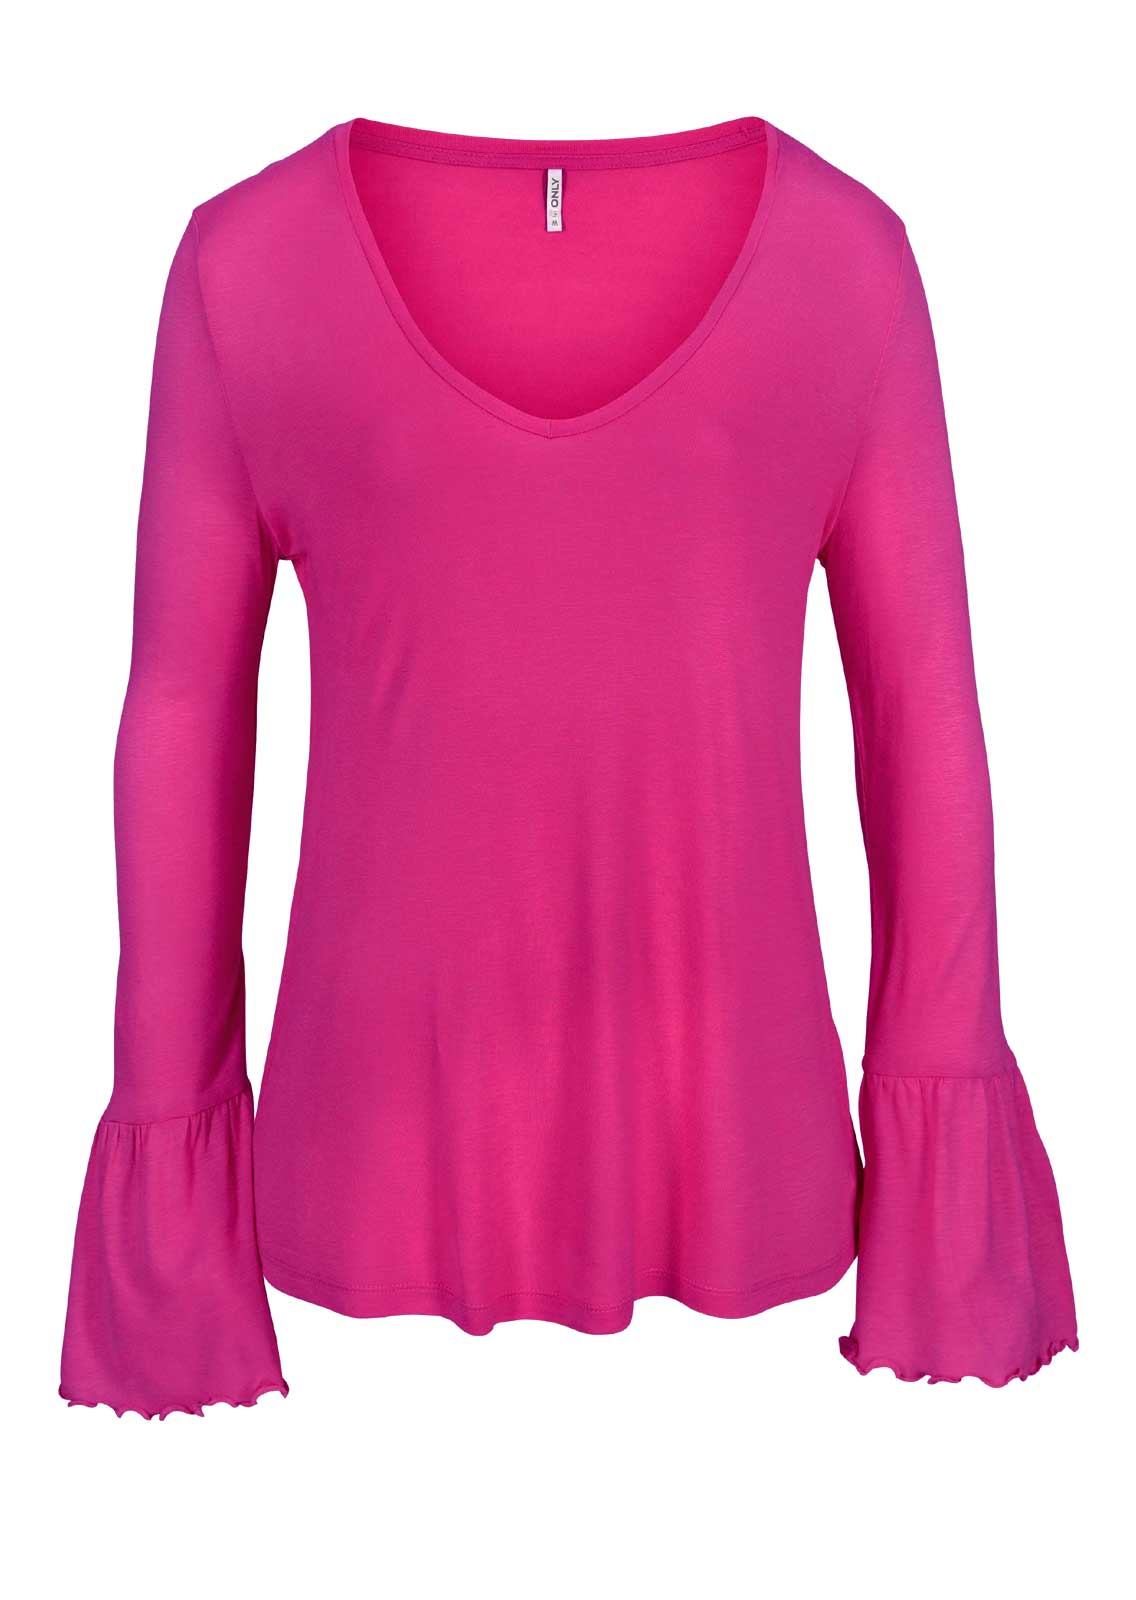 Only Damen Marken-Shirt mit Volants, pink